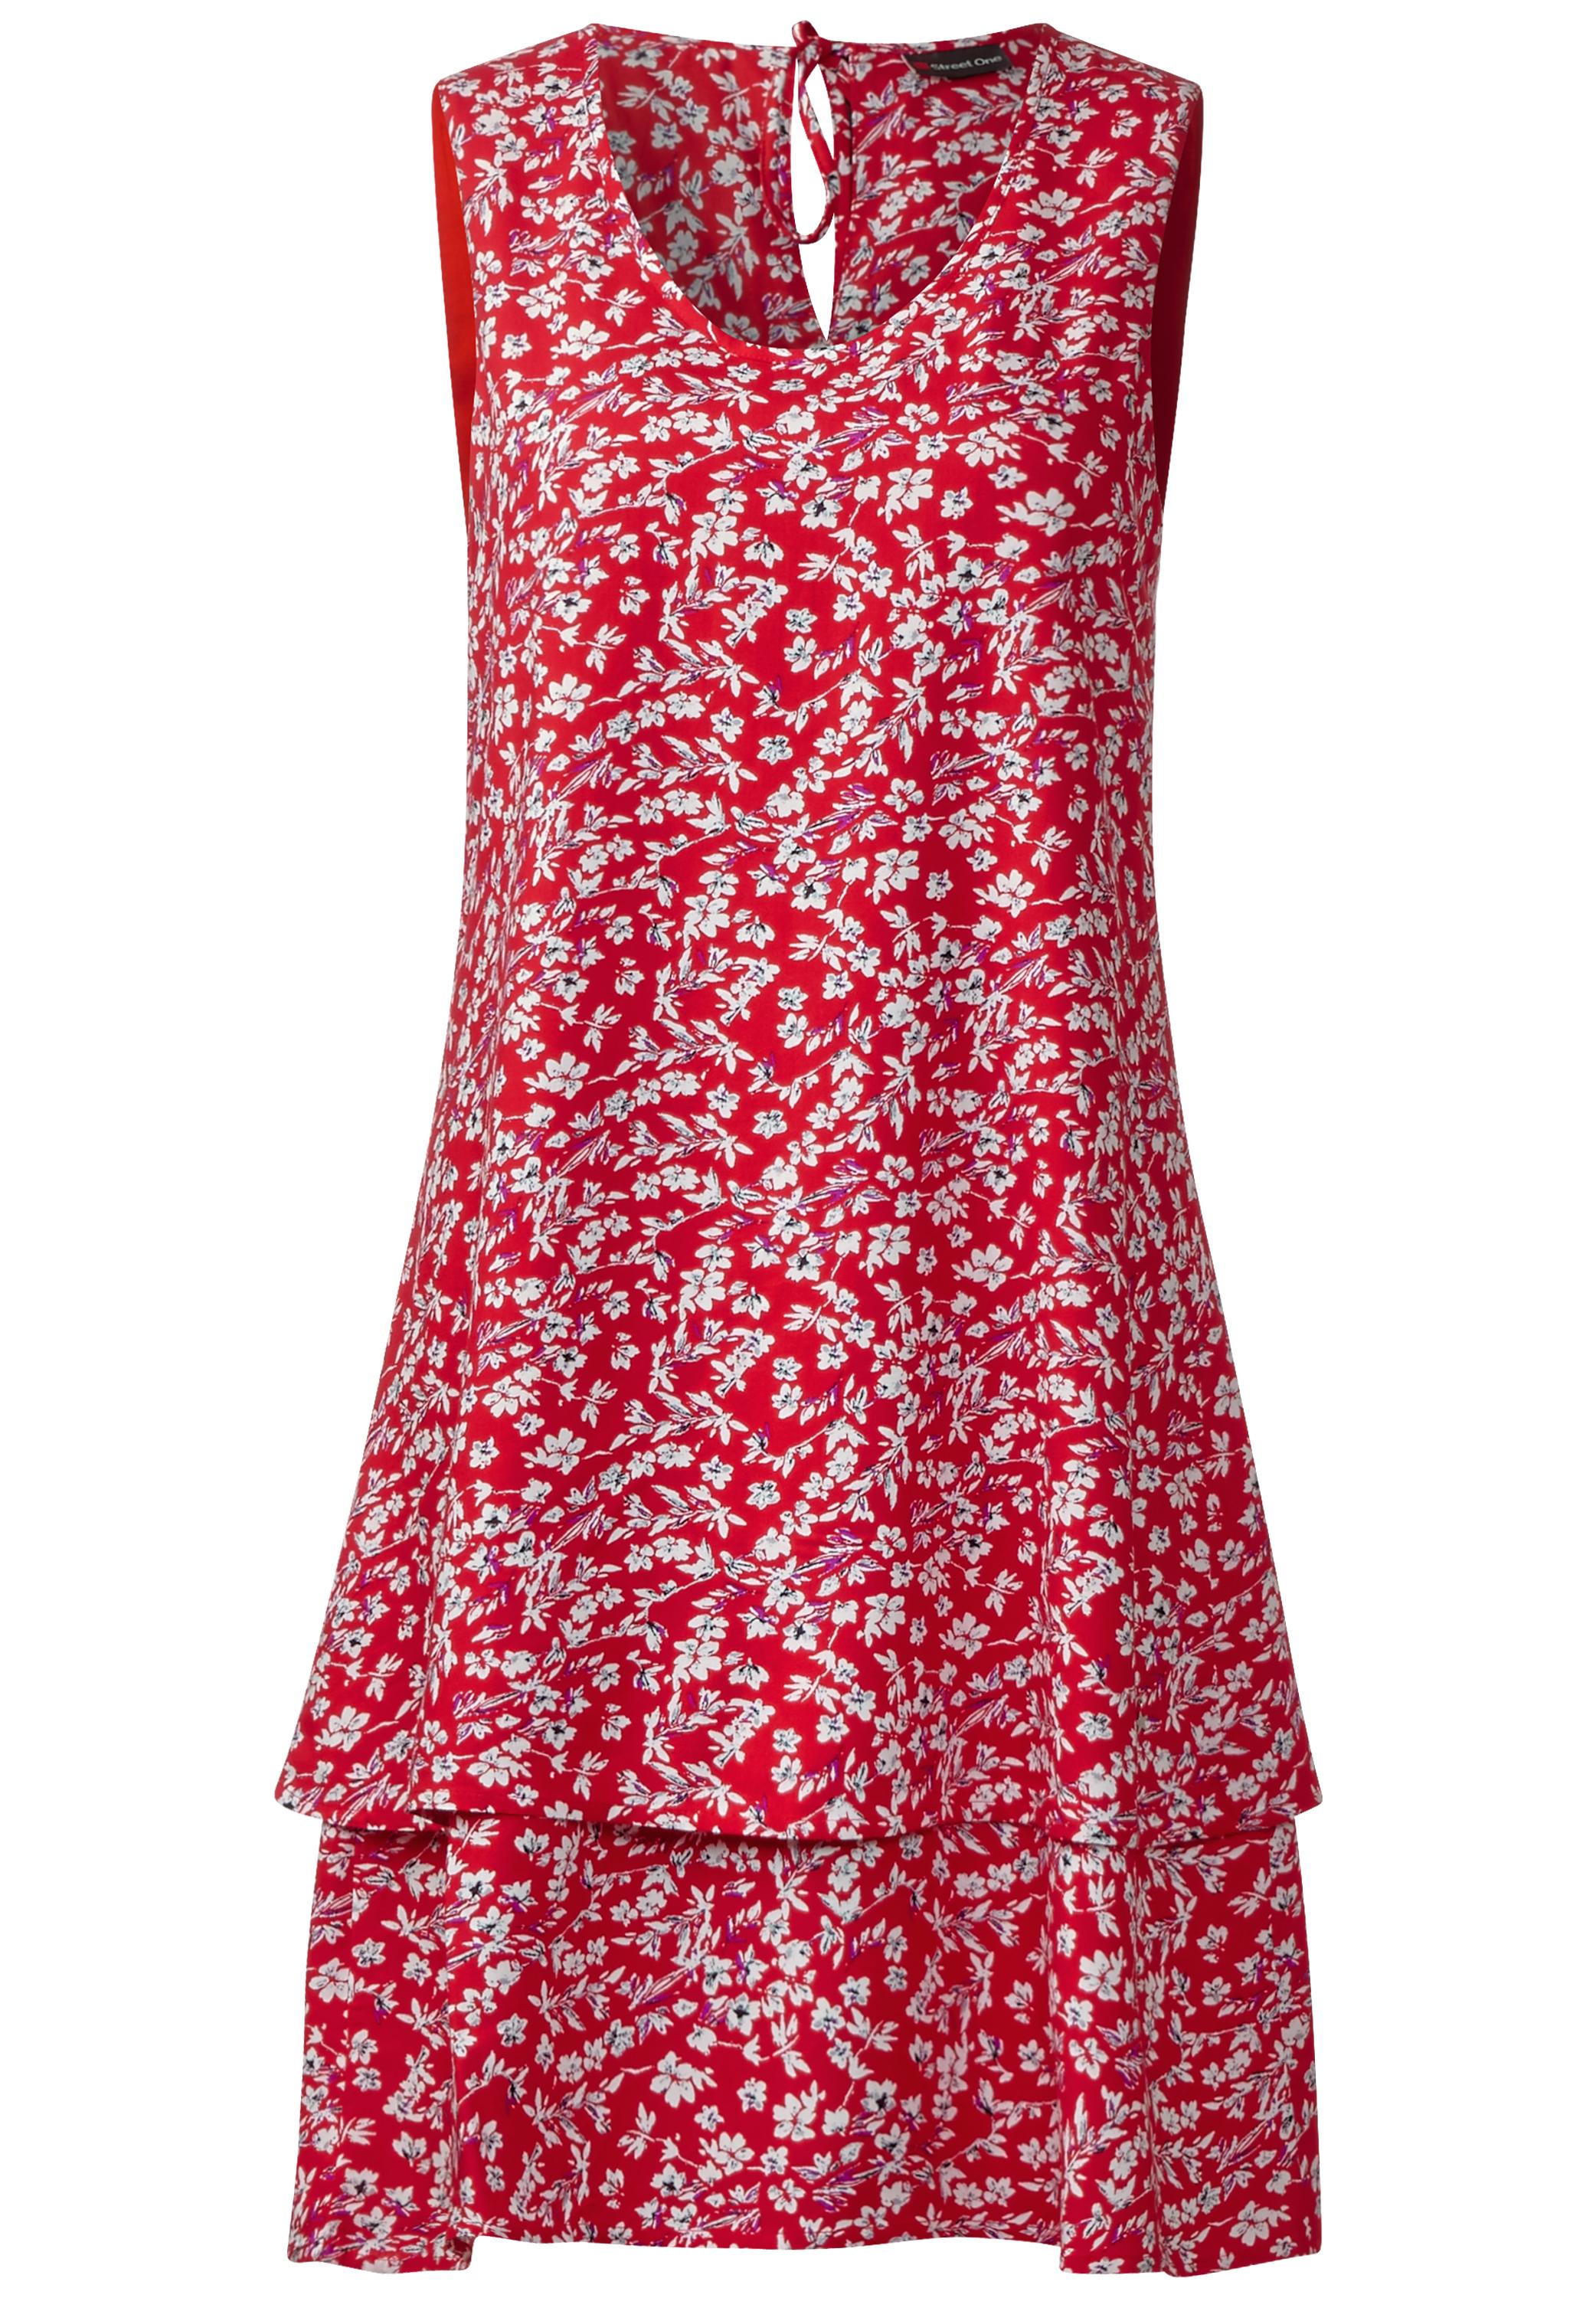 Lagenlook Blütenprint Kleid in Big Red von Street One günstig